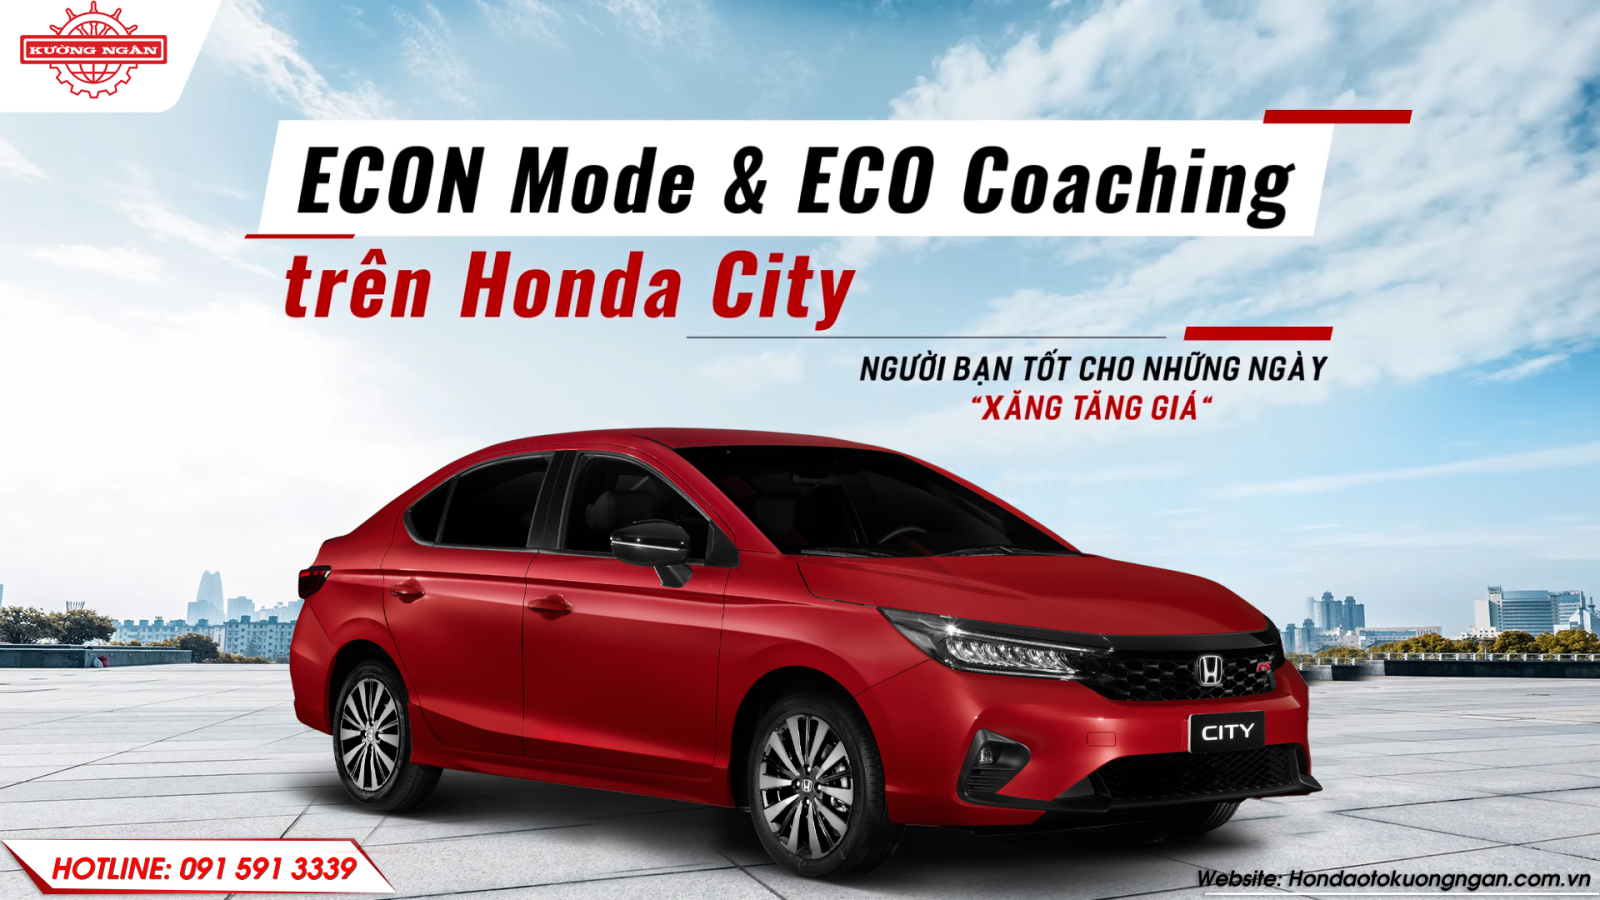 Bật mí khả năng tiết kiệm nhiên liệu trên xe Honda City thông qua chế độ ECON